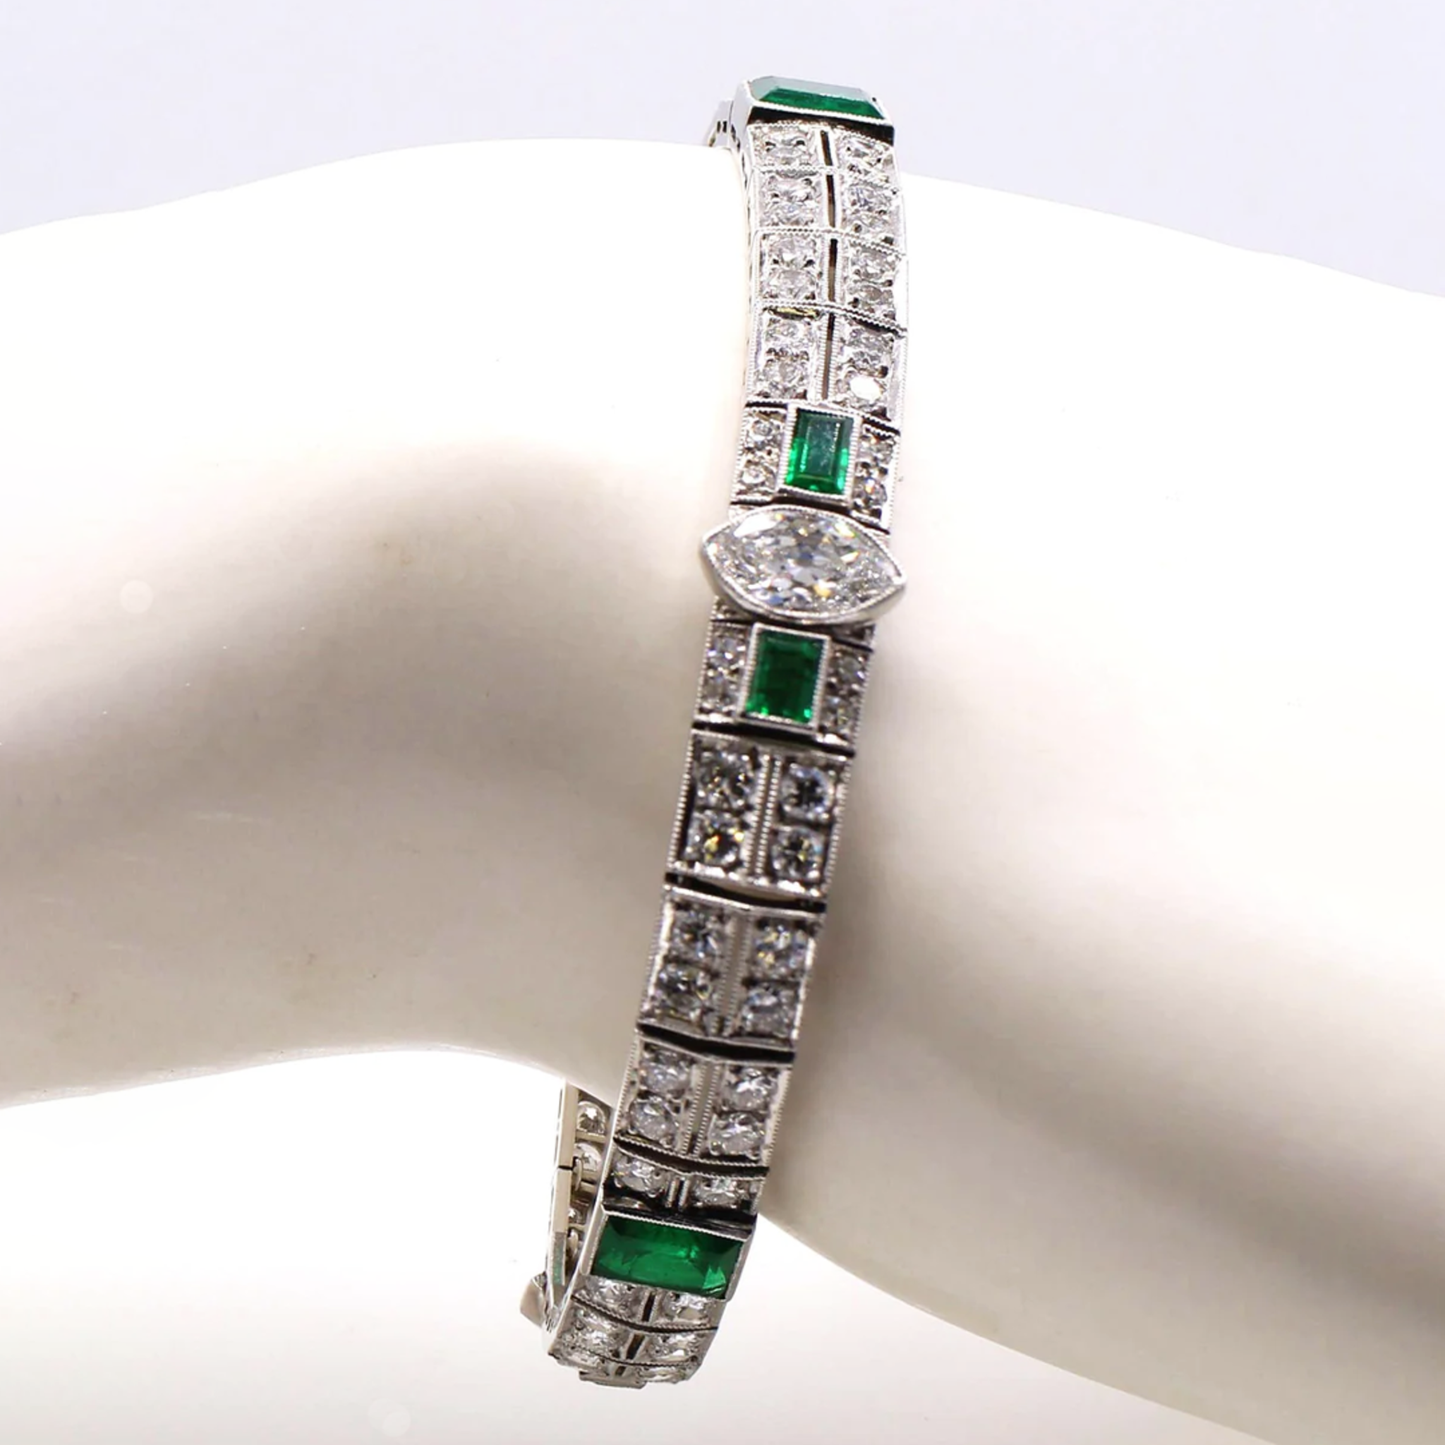 Cartier Art Deco Platinum Diamond & Emerald Bracelet on wrist